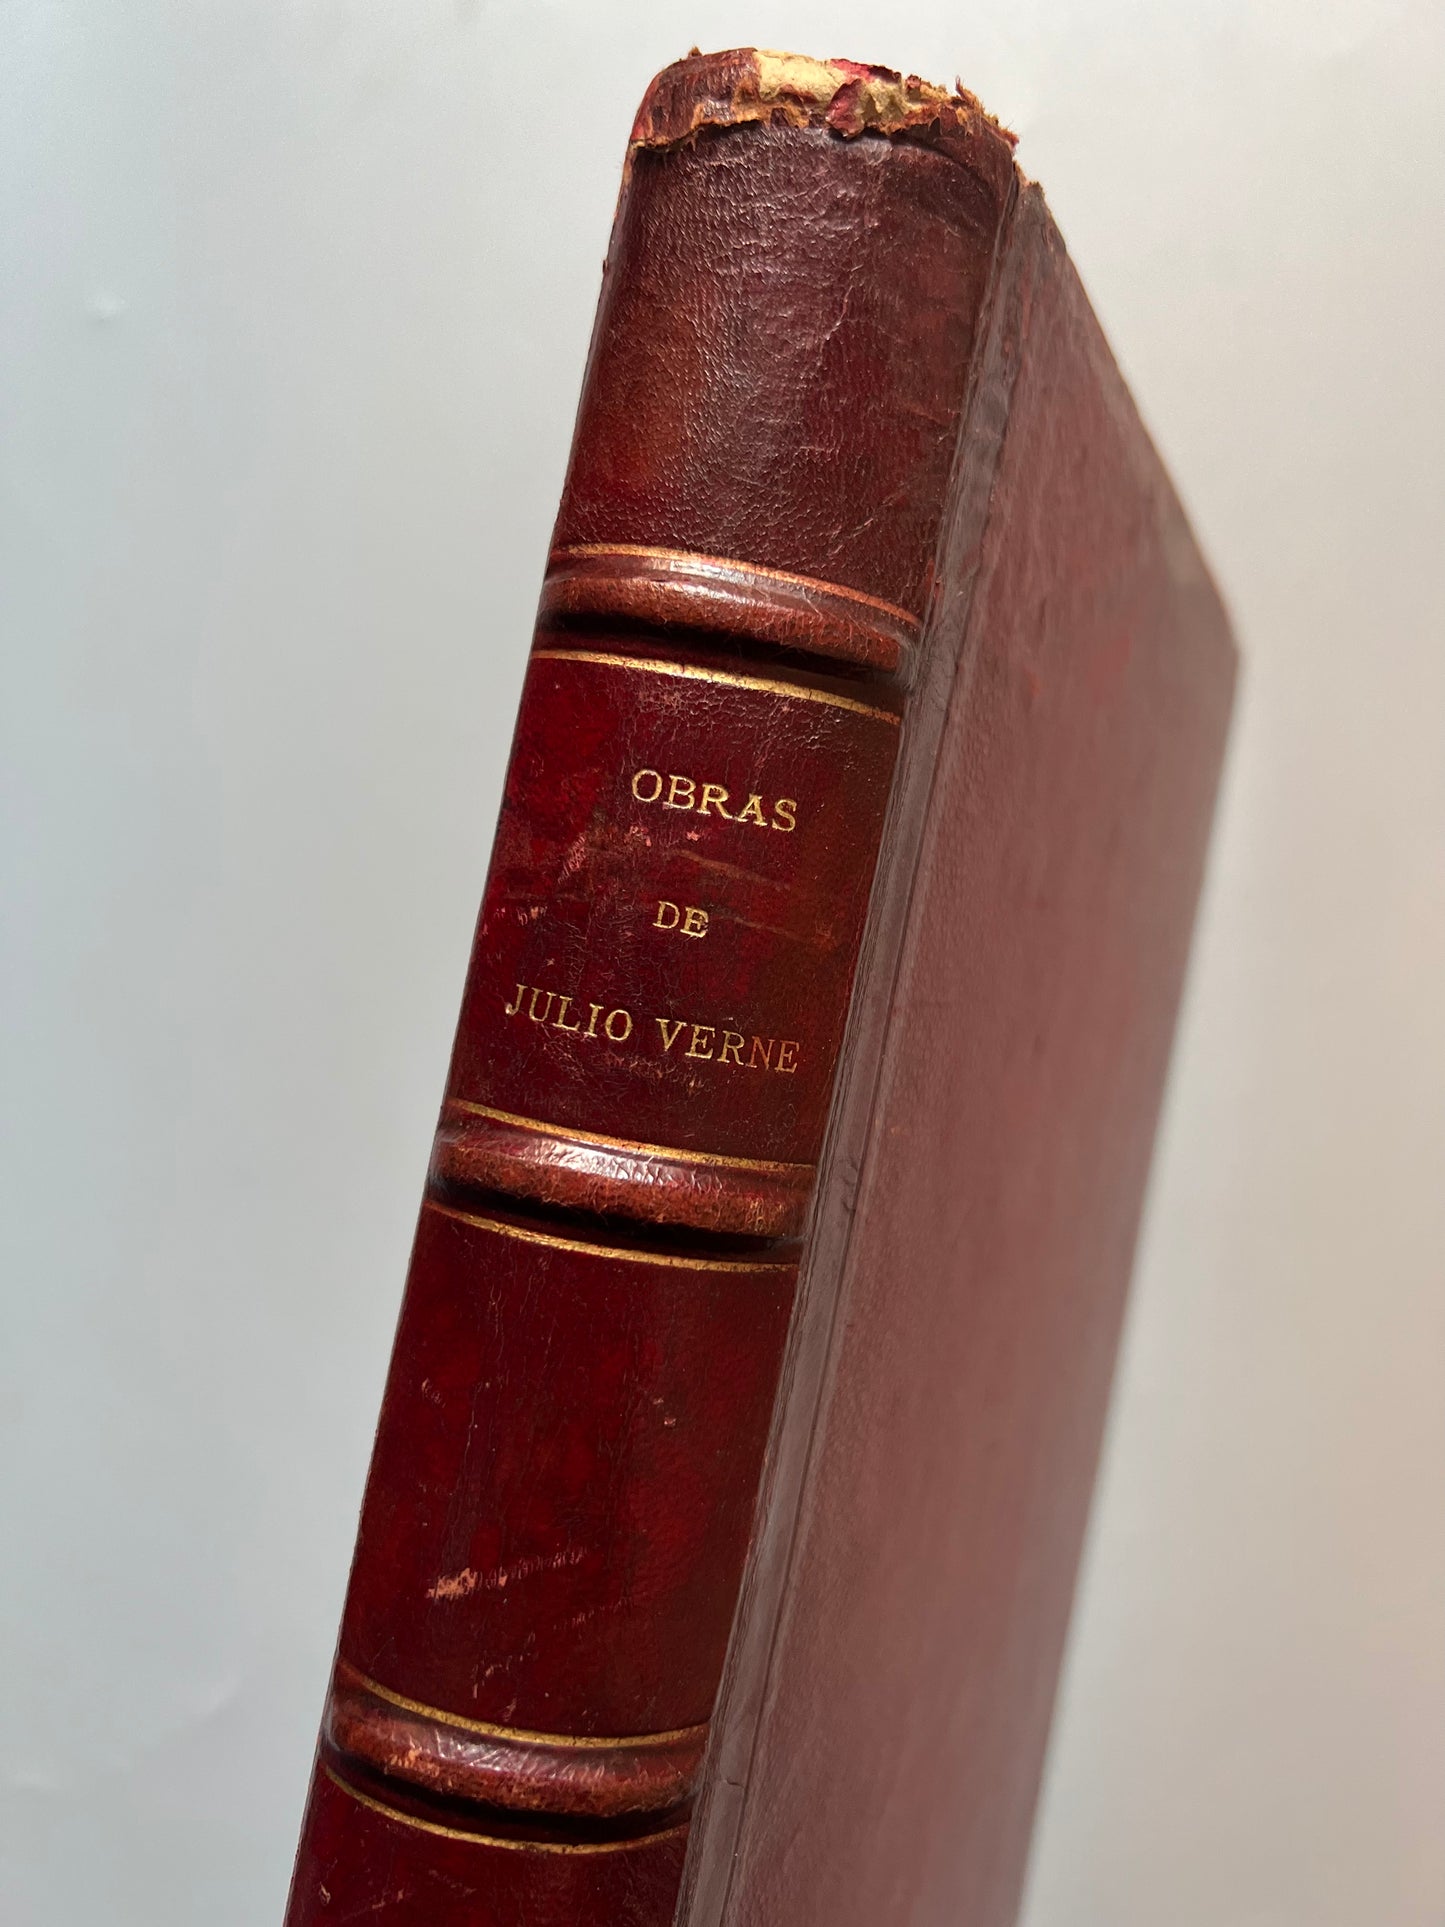 10 obras de Julio Verne, Biblioteca ilustrada Gaspar y Roig - 1876